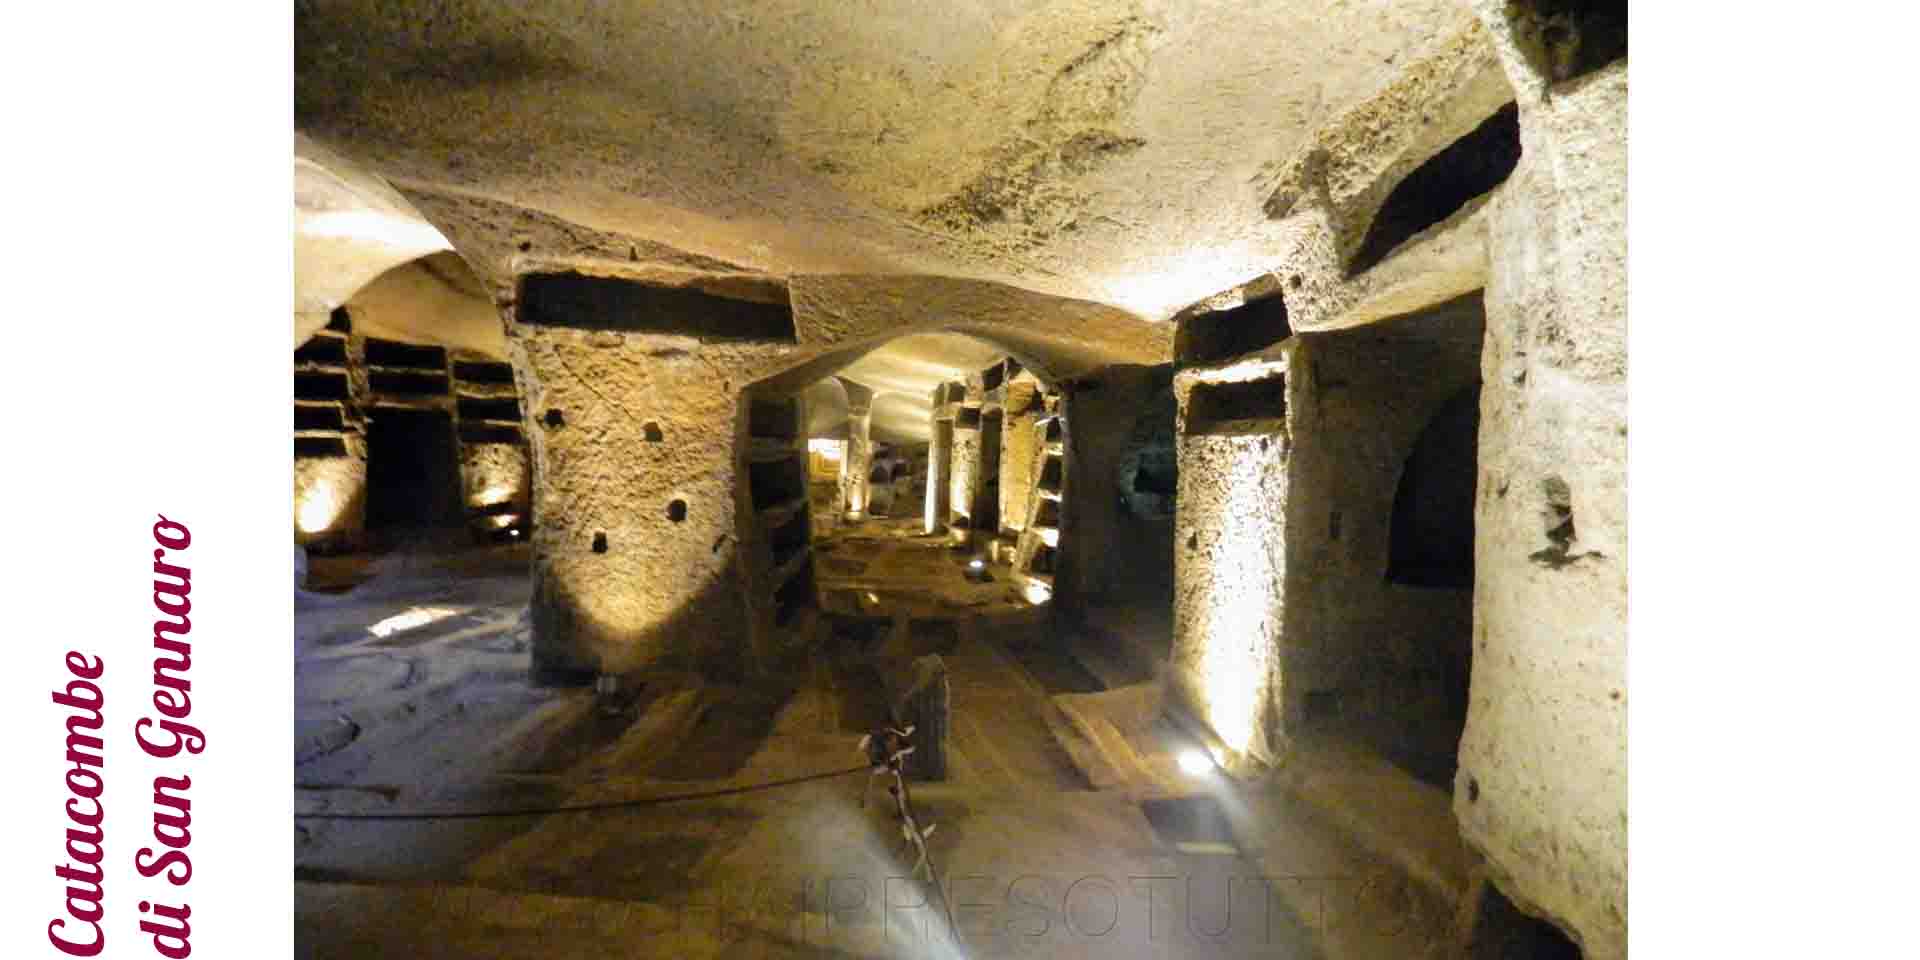 Napoli catacombe di San Gennaro vista dei sotterranei